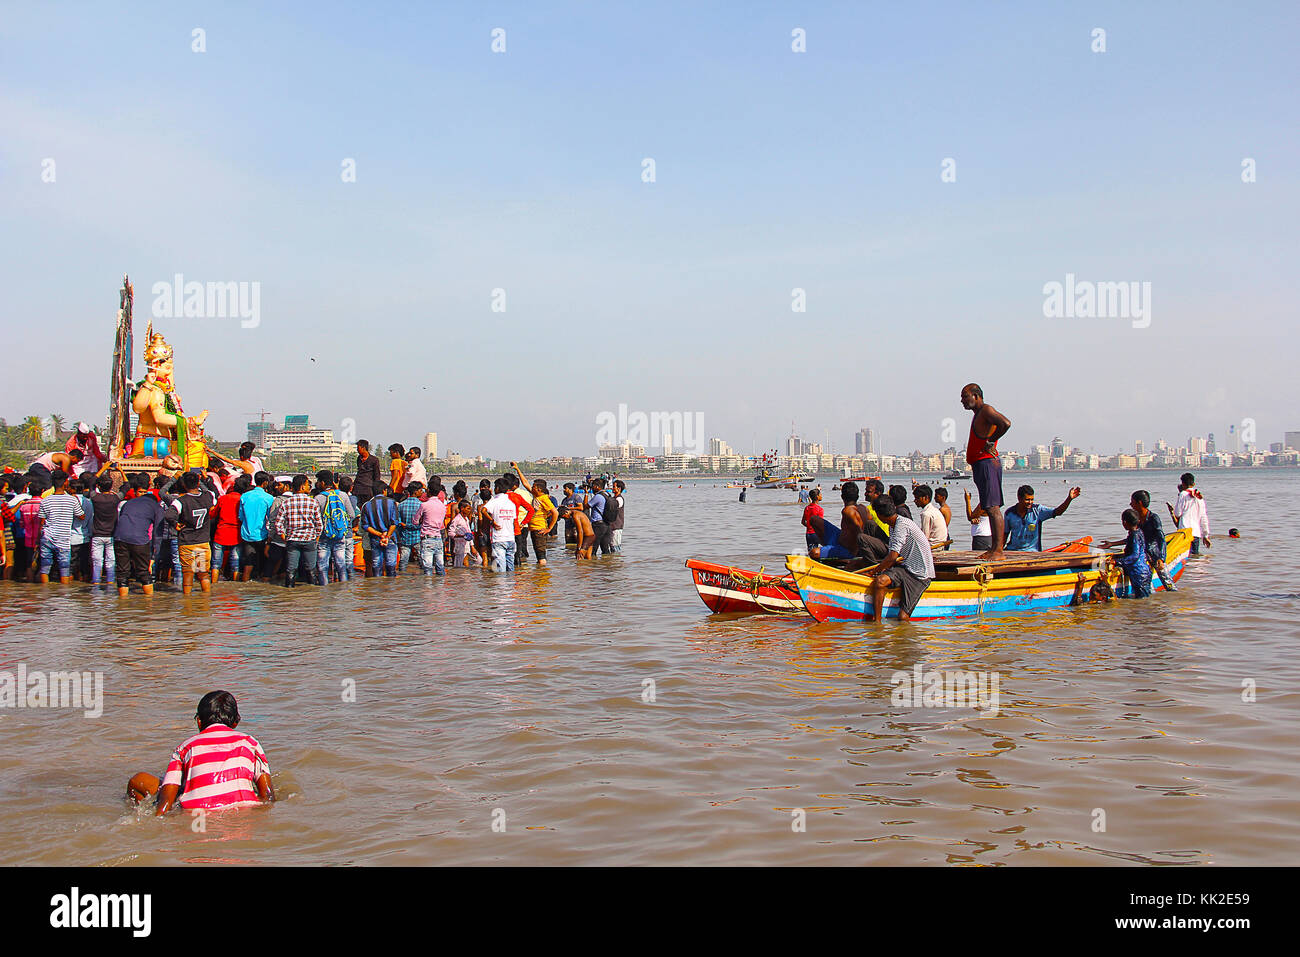 Enorme idolo Ganapati per immergersi nel mare a bordo di barche di legno, Chowpatty, Mumbai Foto Stock